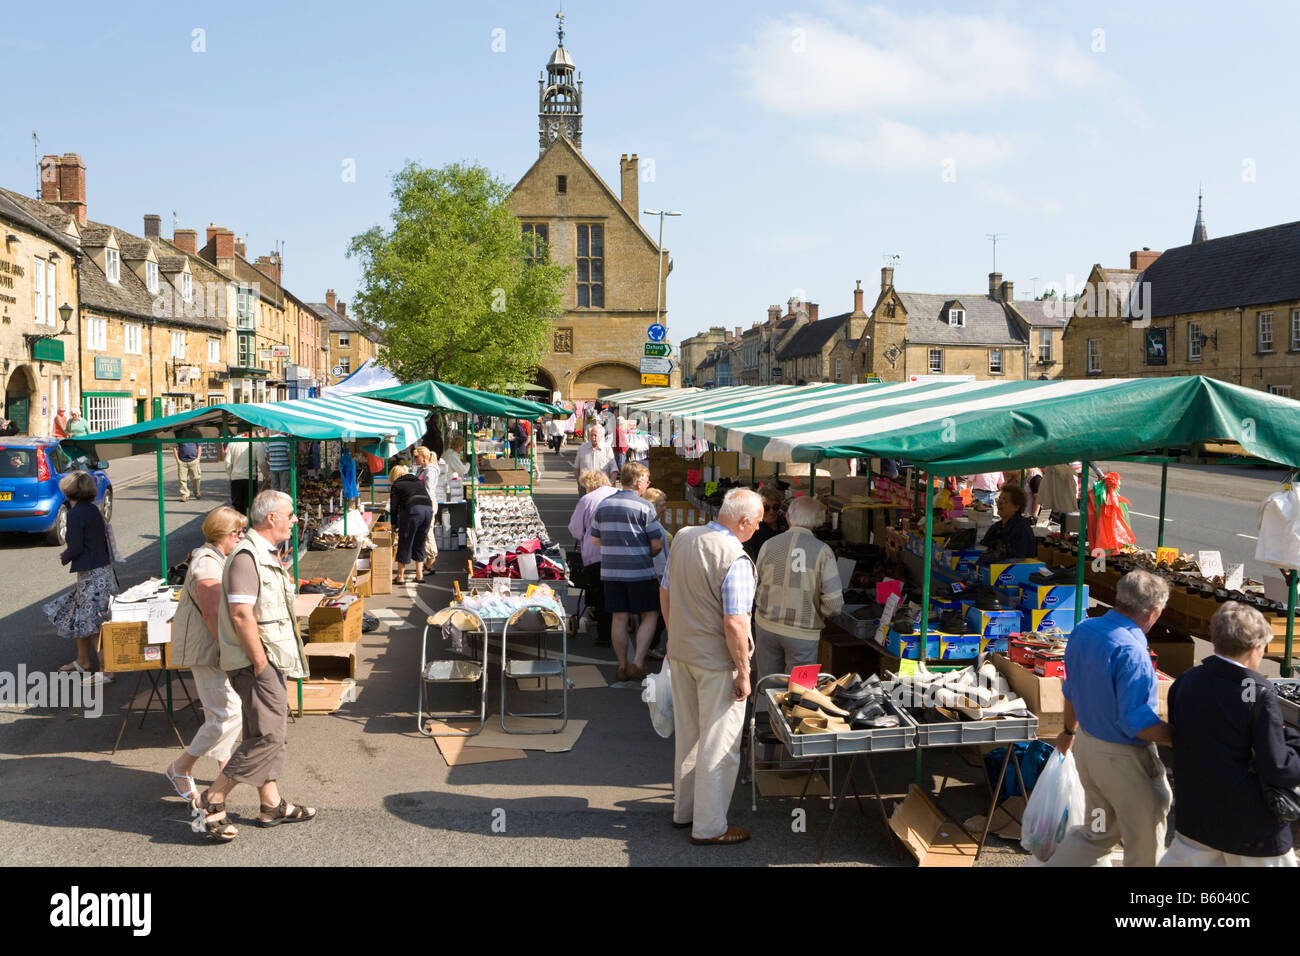 Le marché régulier du mardi dans la High Street de la ville de Moreton, dans les Cotswolds, à Marsh, Gloucestershire, Royaume-Uni Banque D'Images